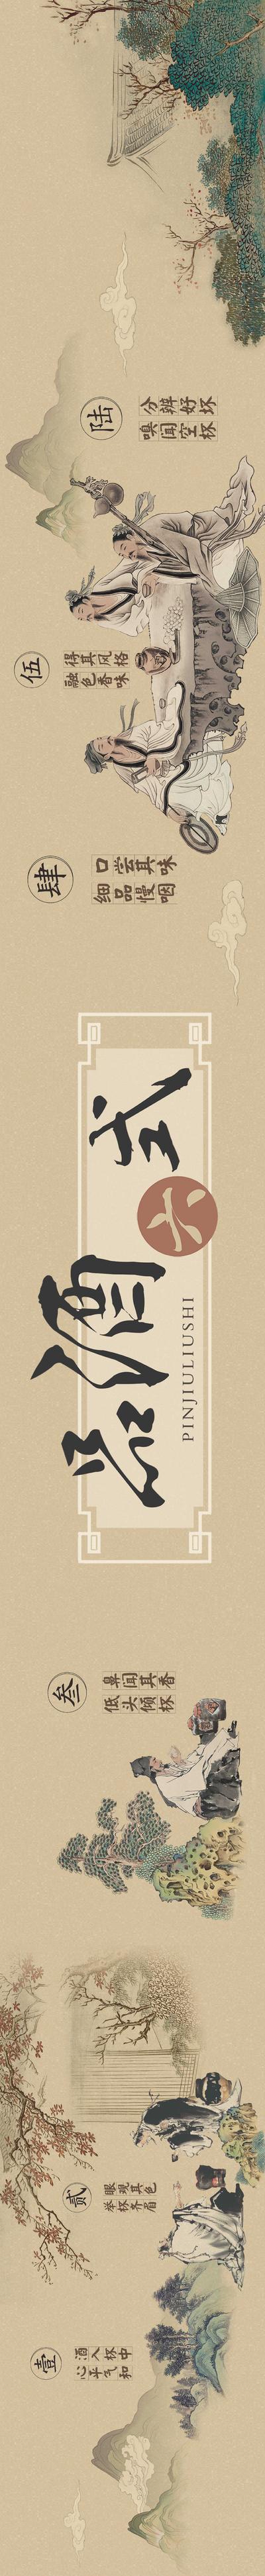 【南门网】海报 长图 品酒 白酒 古代喝酒 文化 古风 古人 中国风 工笔画 手绘